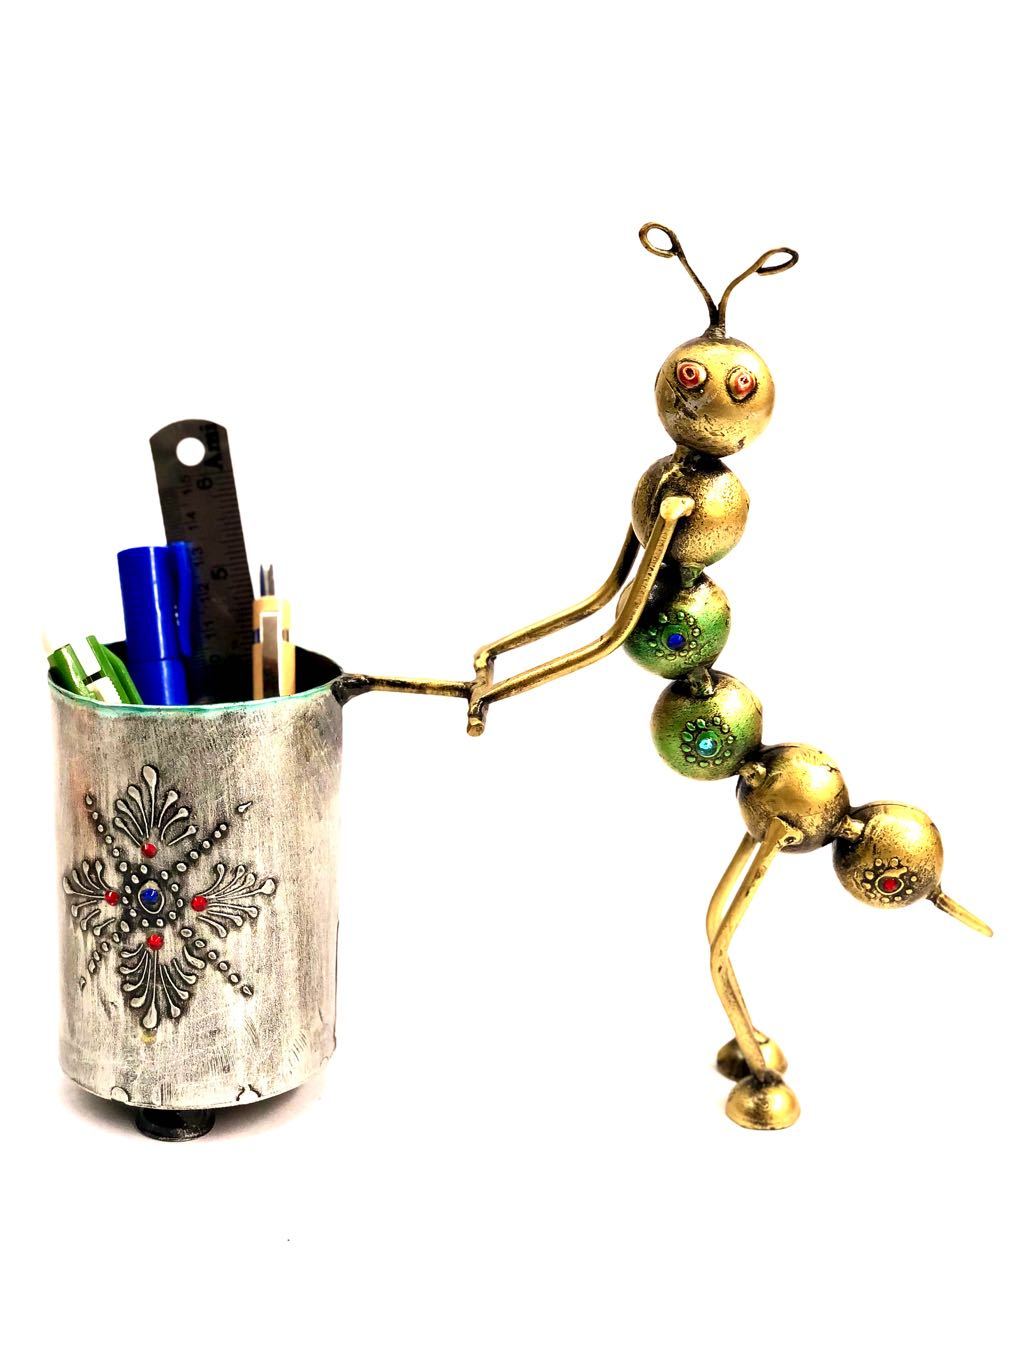 Caterpillar Pen Stand Designer Metal Holder Multipurpose By Tamrapatra